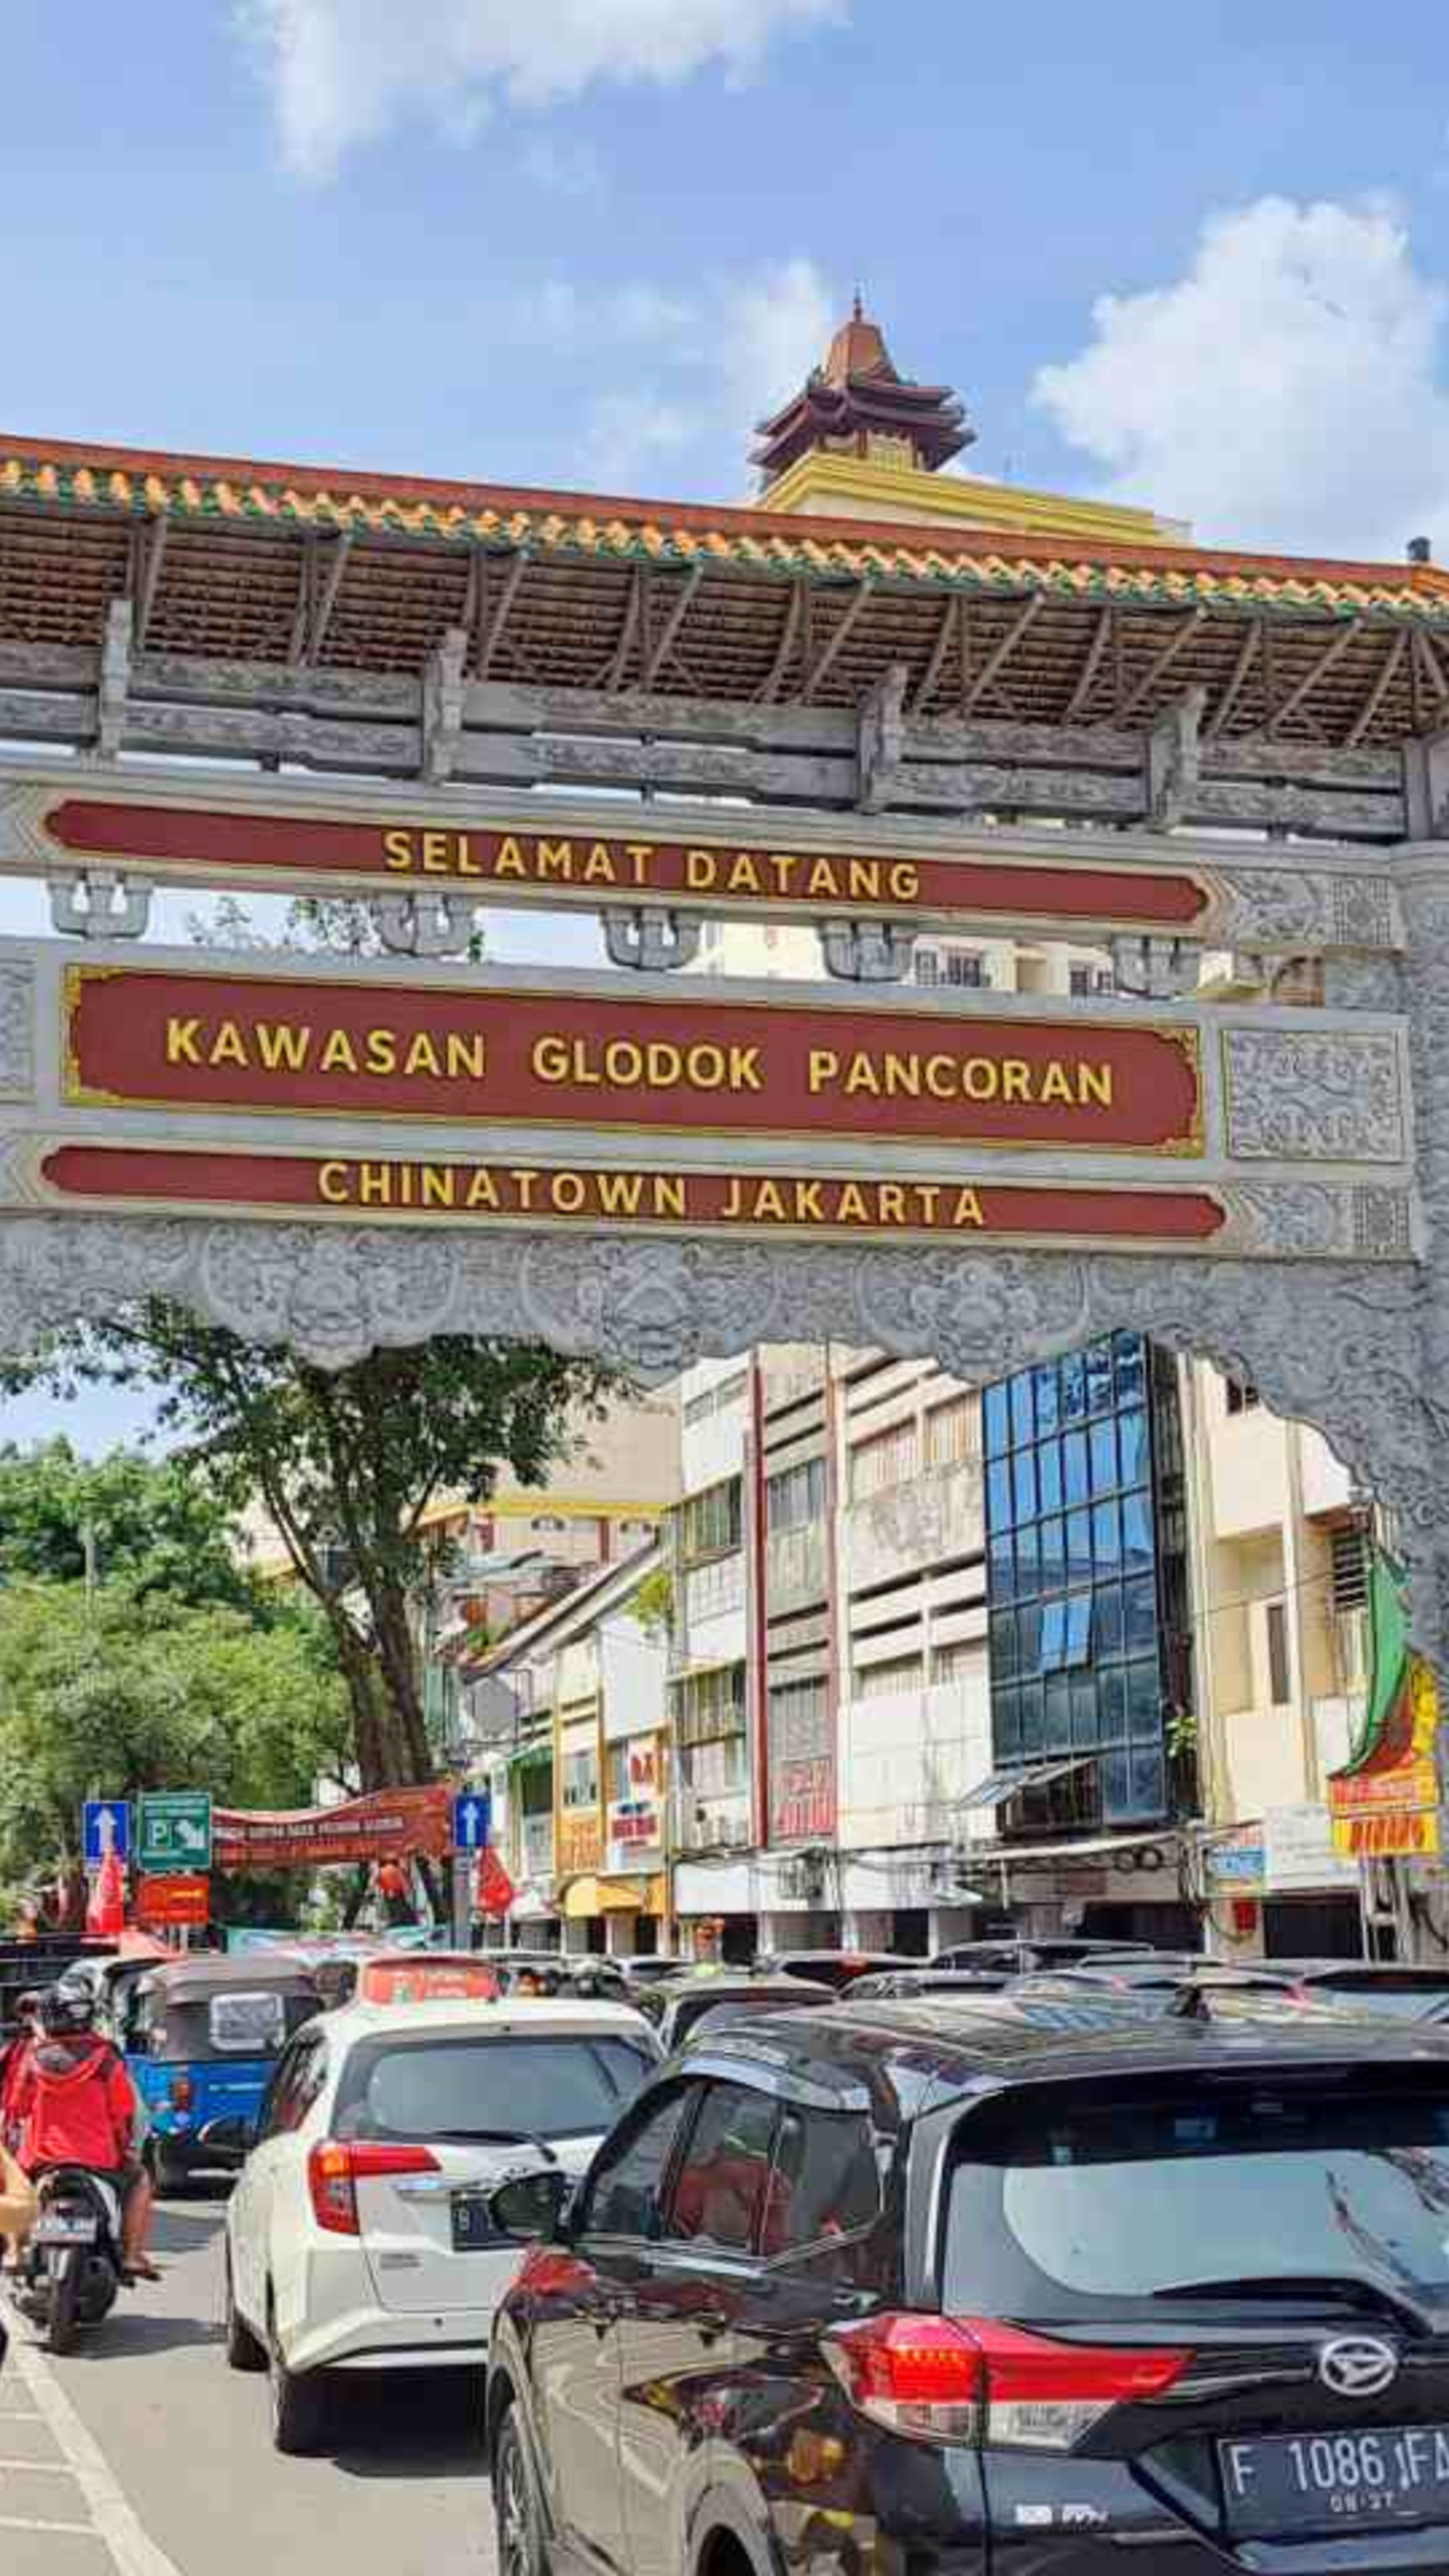 Une porte ornementée accueille les visiteurs à Glodok, le quartier chinois animé de Jakarta, sous un ciel ensoleillé.